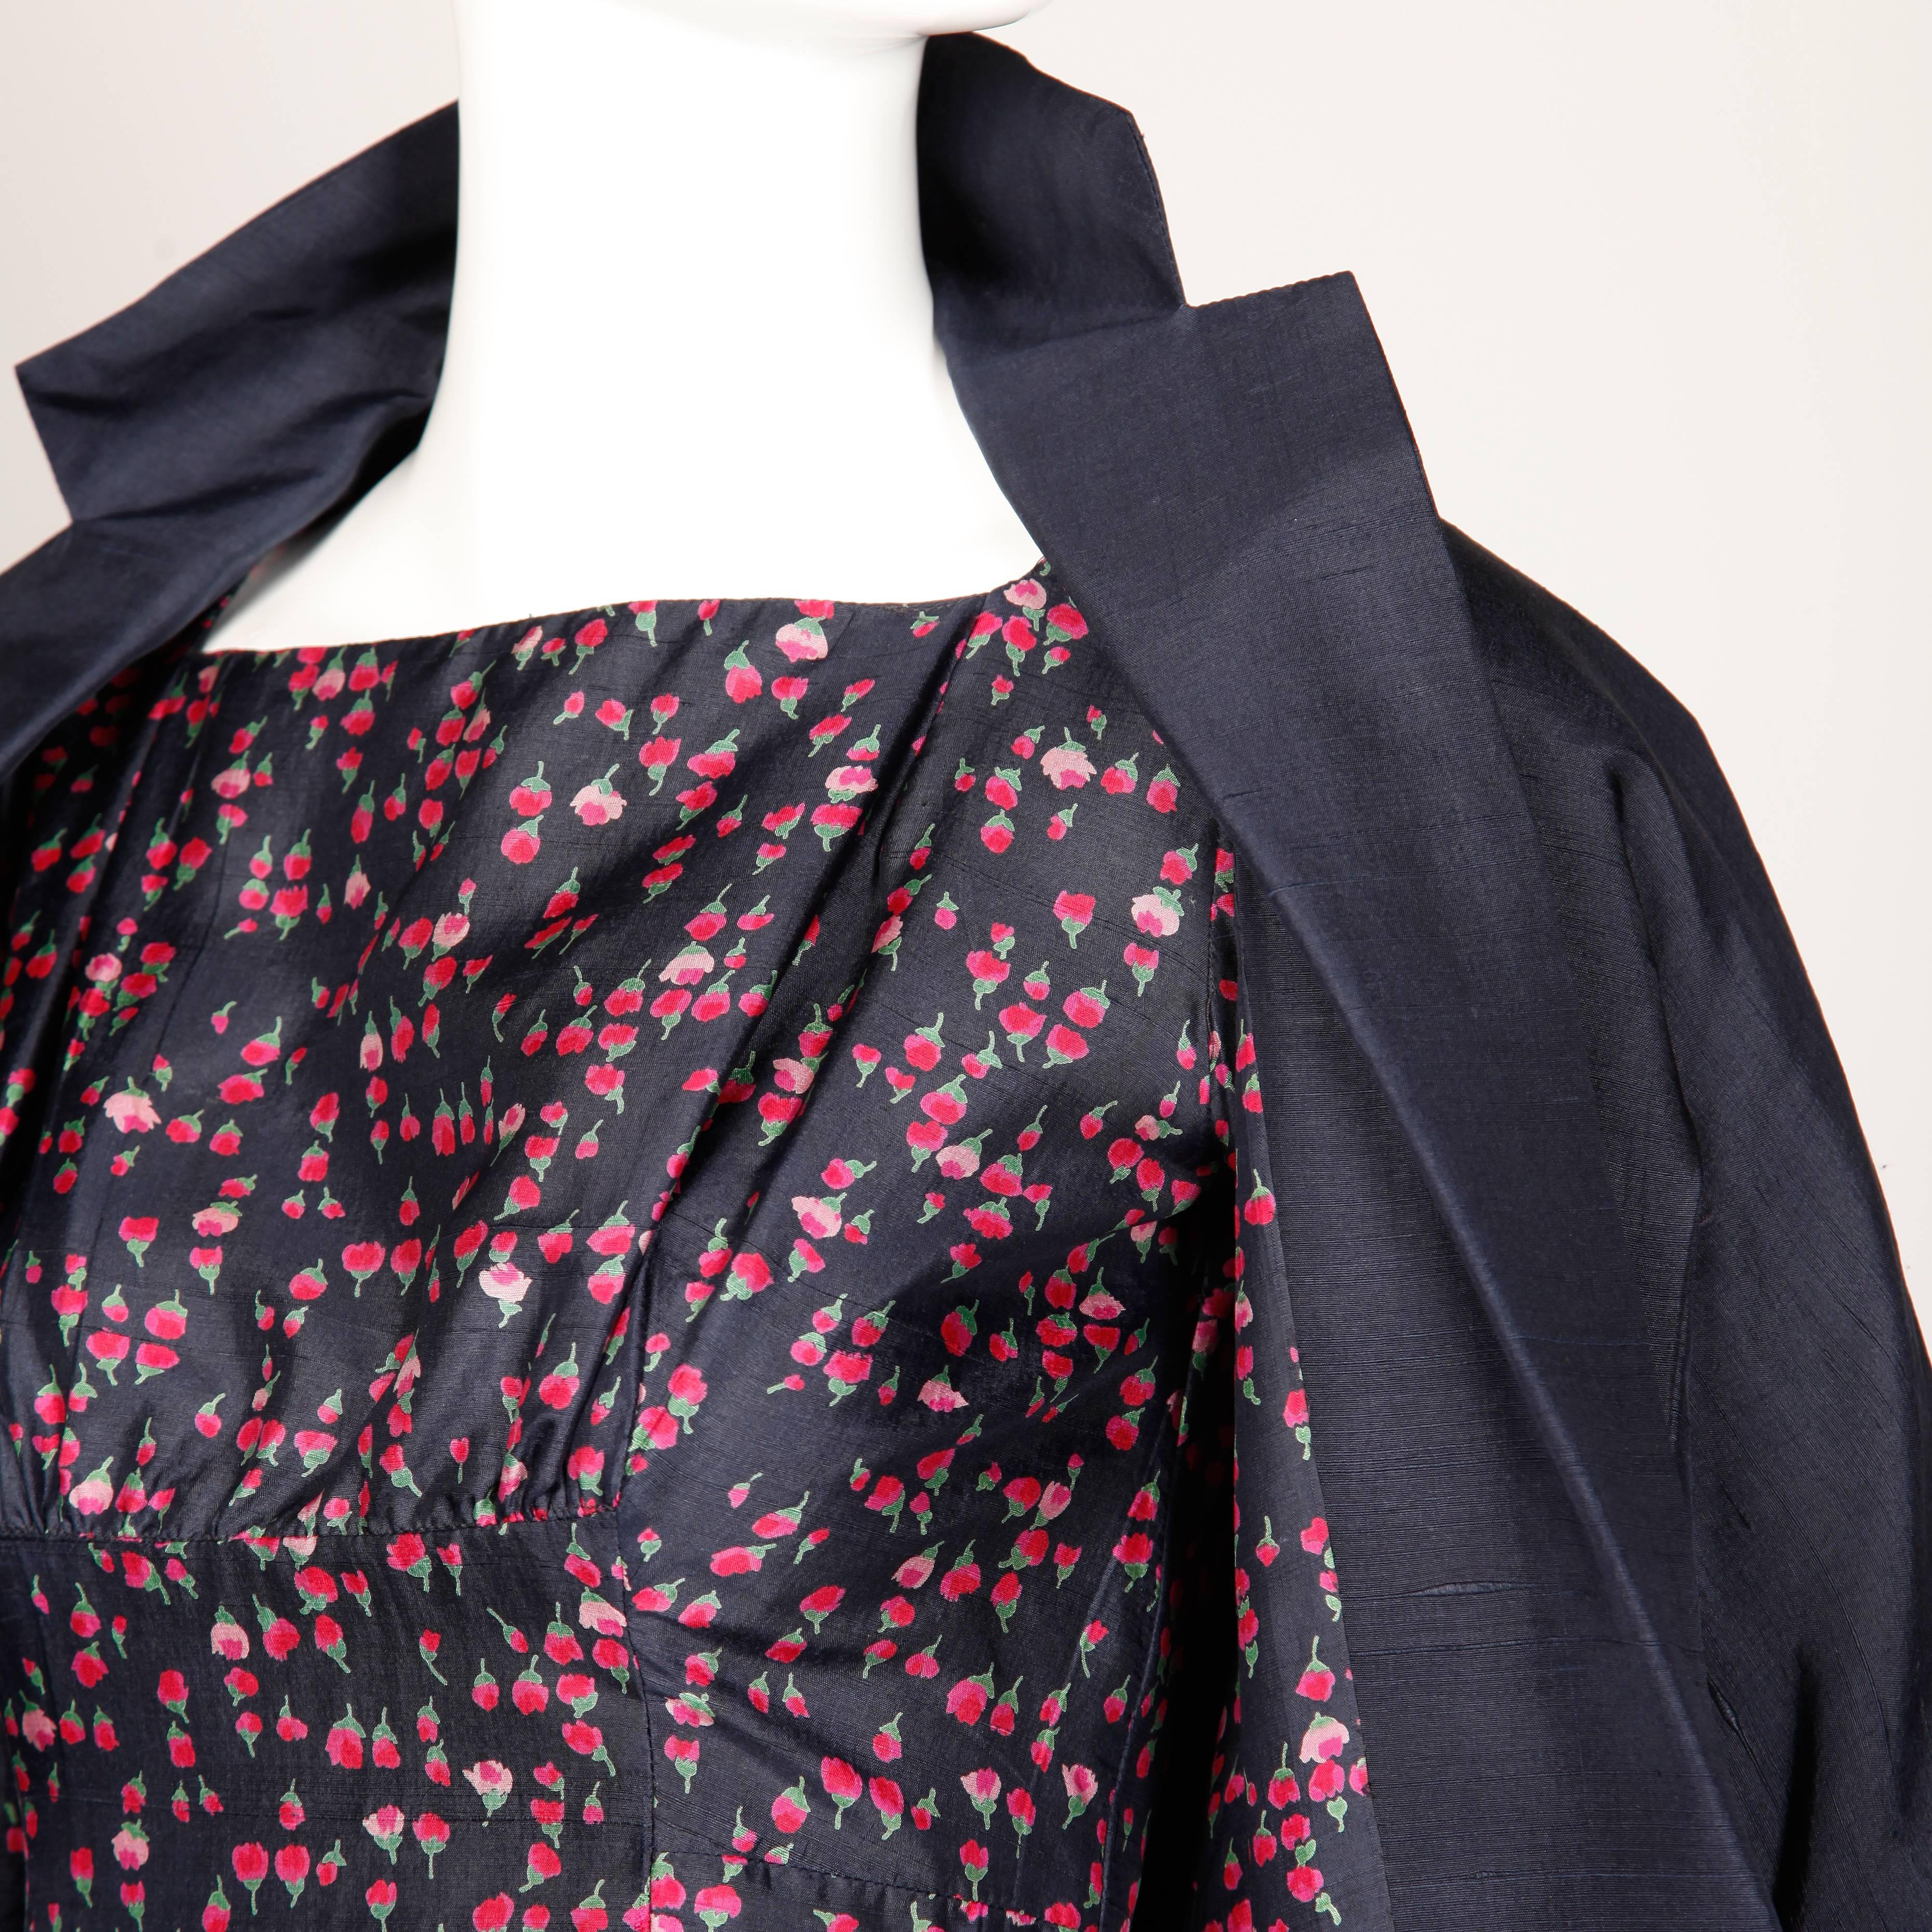 Women's 1960s Vintage Floral Print Silk Sheath Dress and Coat 2-Piece Ensemble